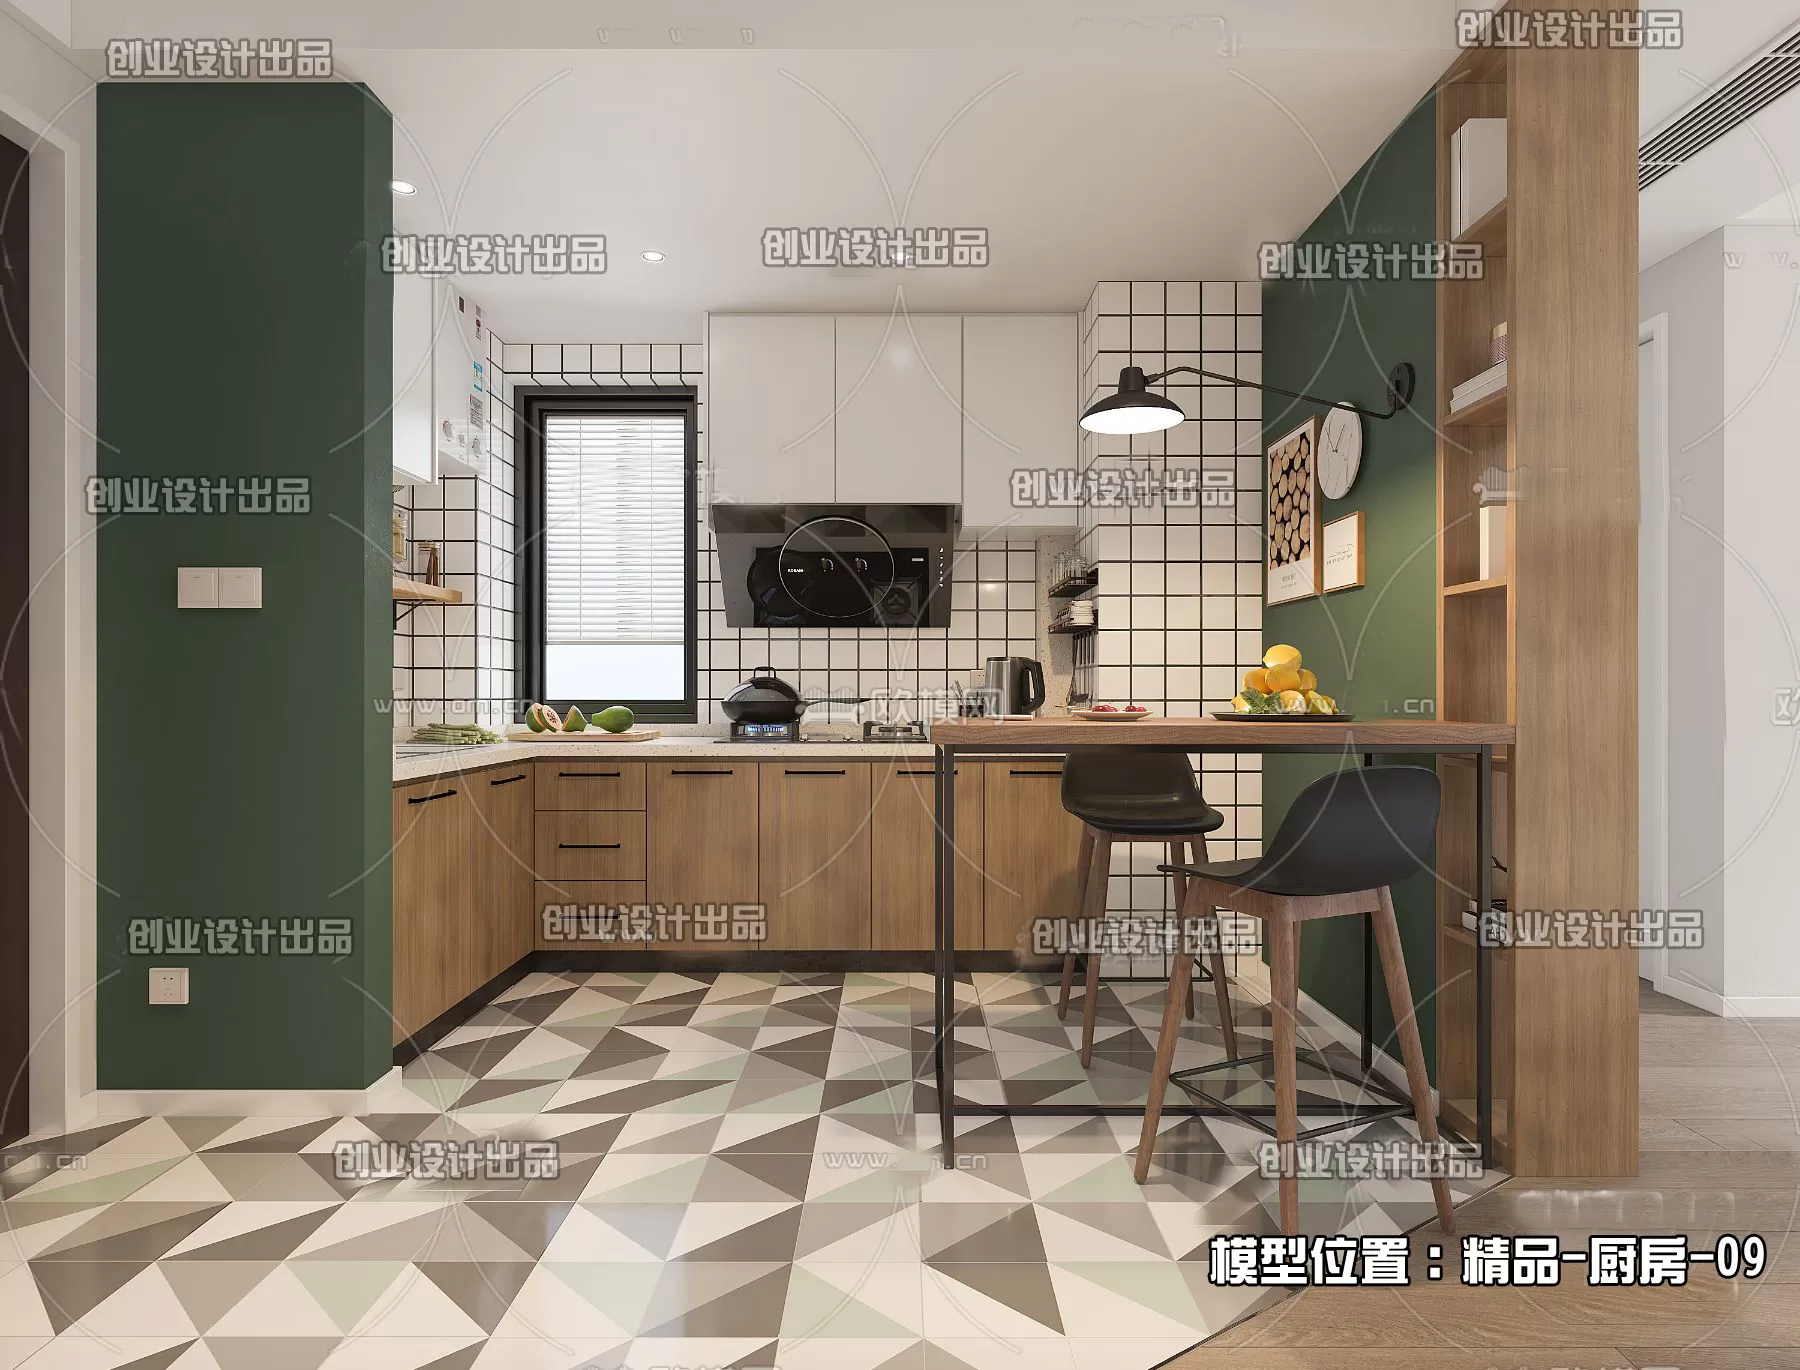 Kitchen – Scandinavian architecture – 030